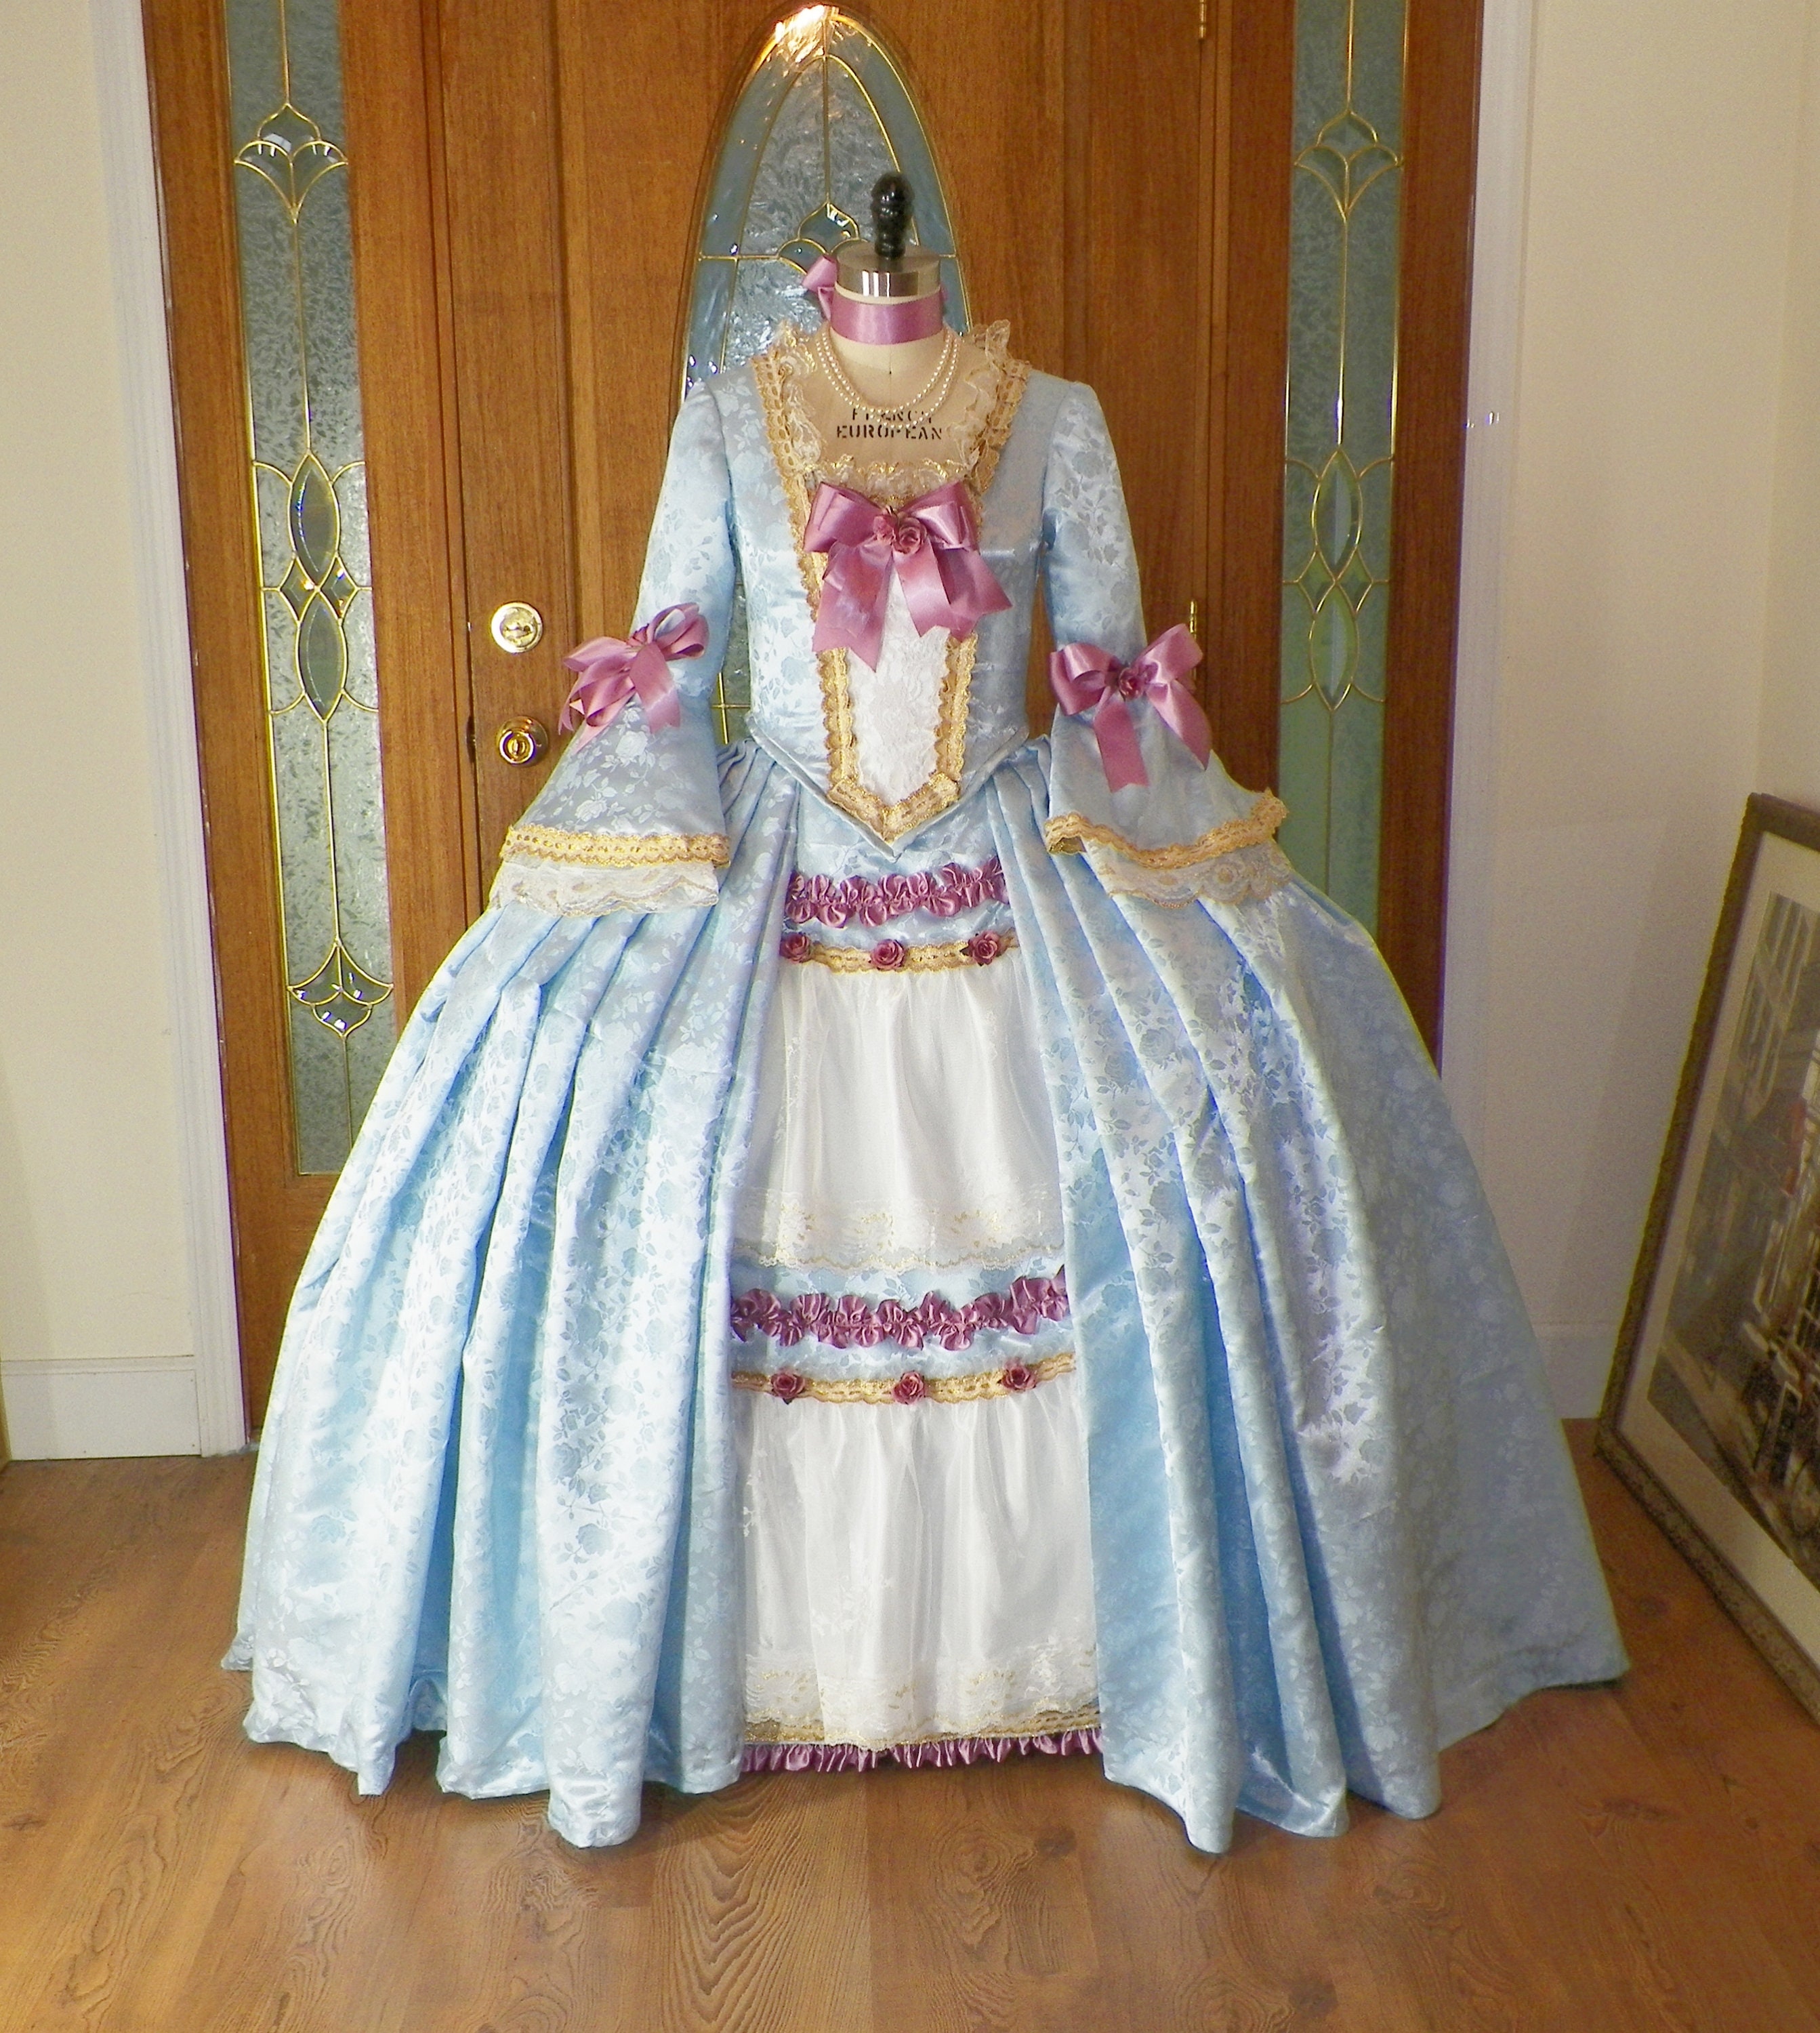 Marie Antoinette Dress,Marie Antoinette Costume, Marie Antoinette